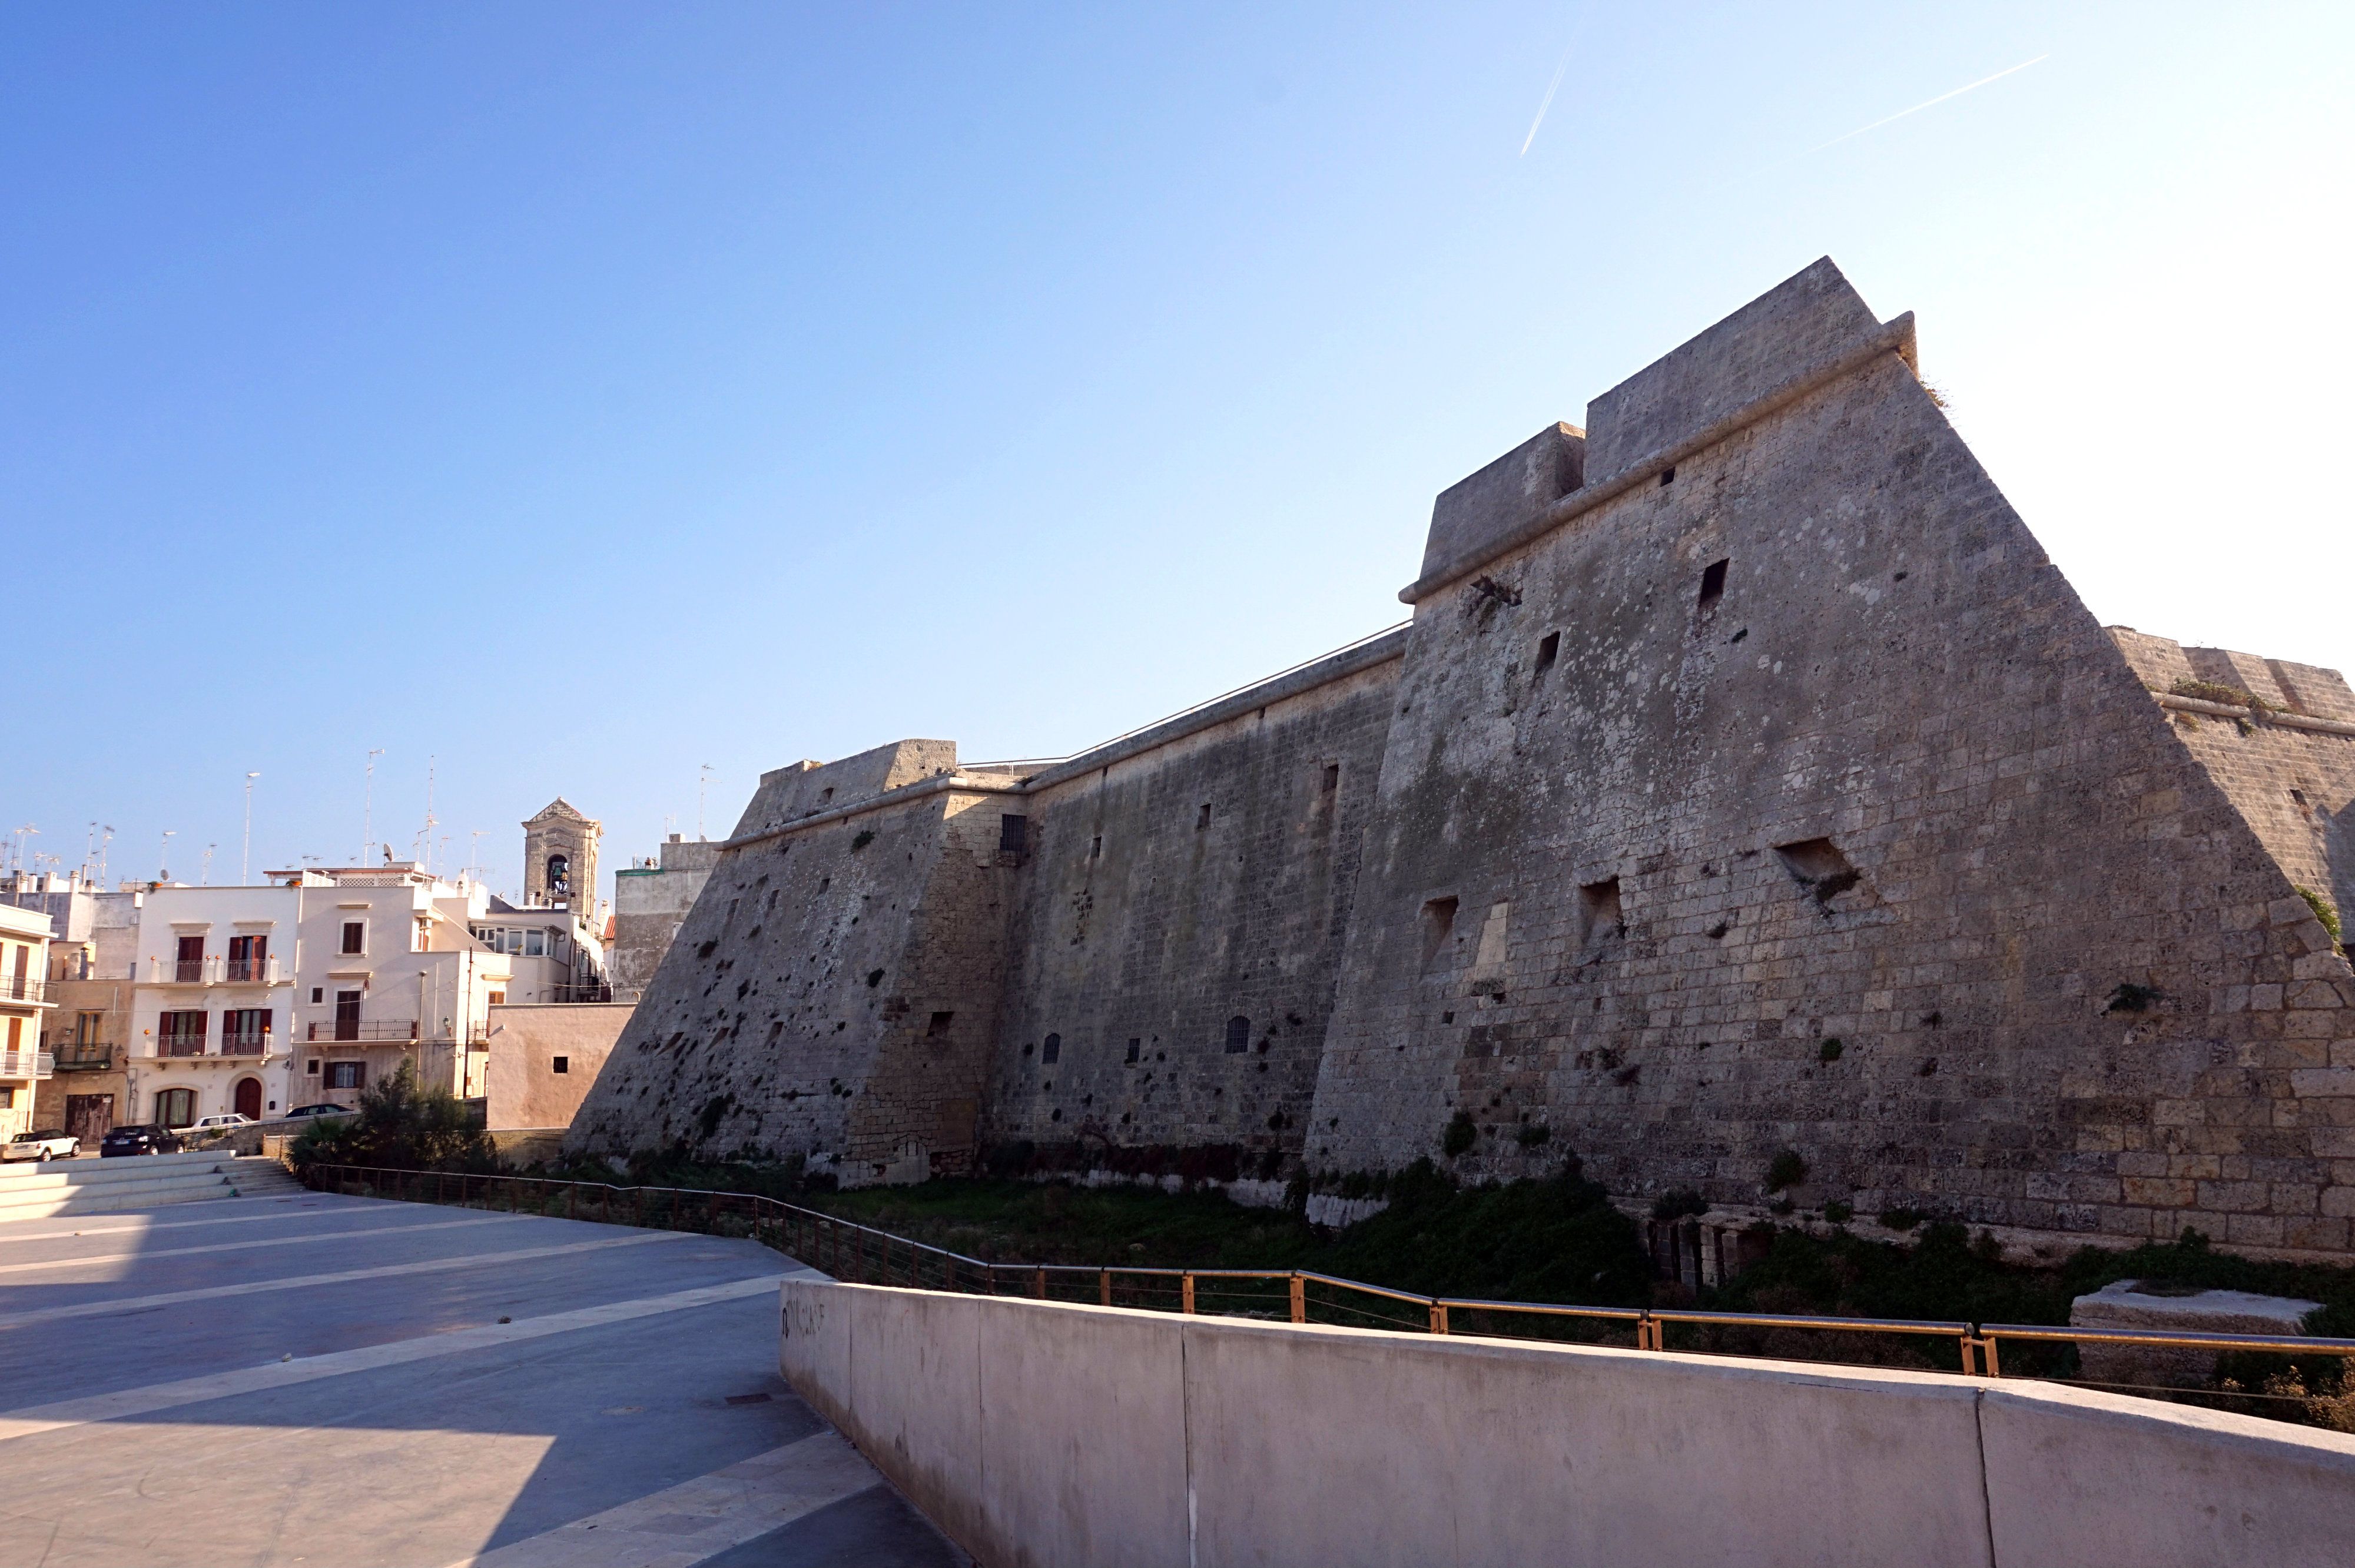 Mola di Bari Castle, Puglia